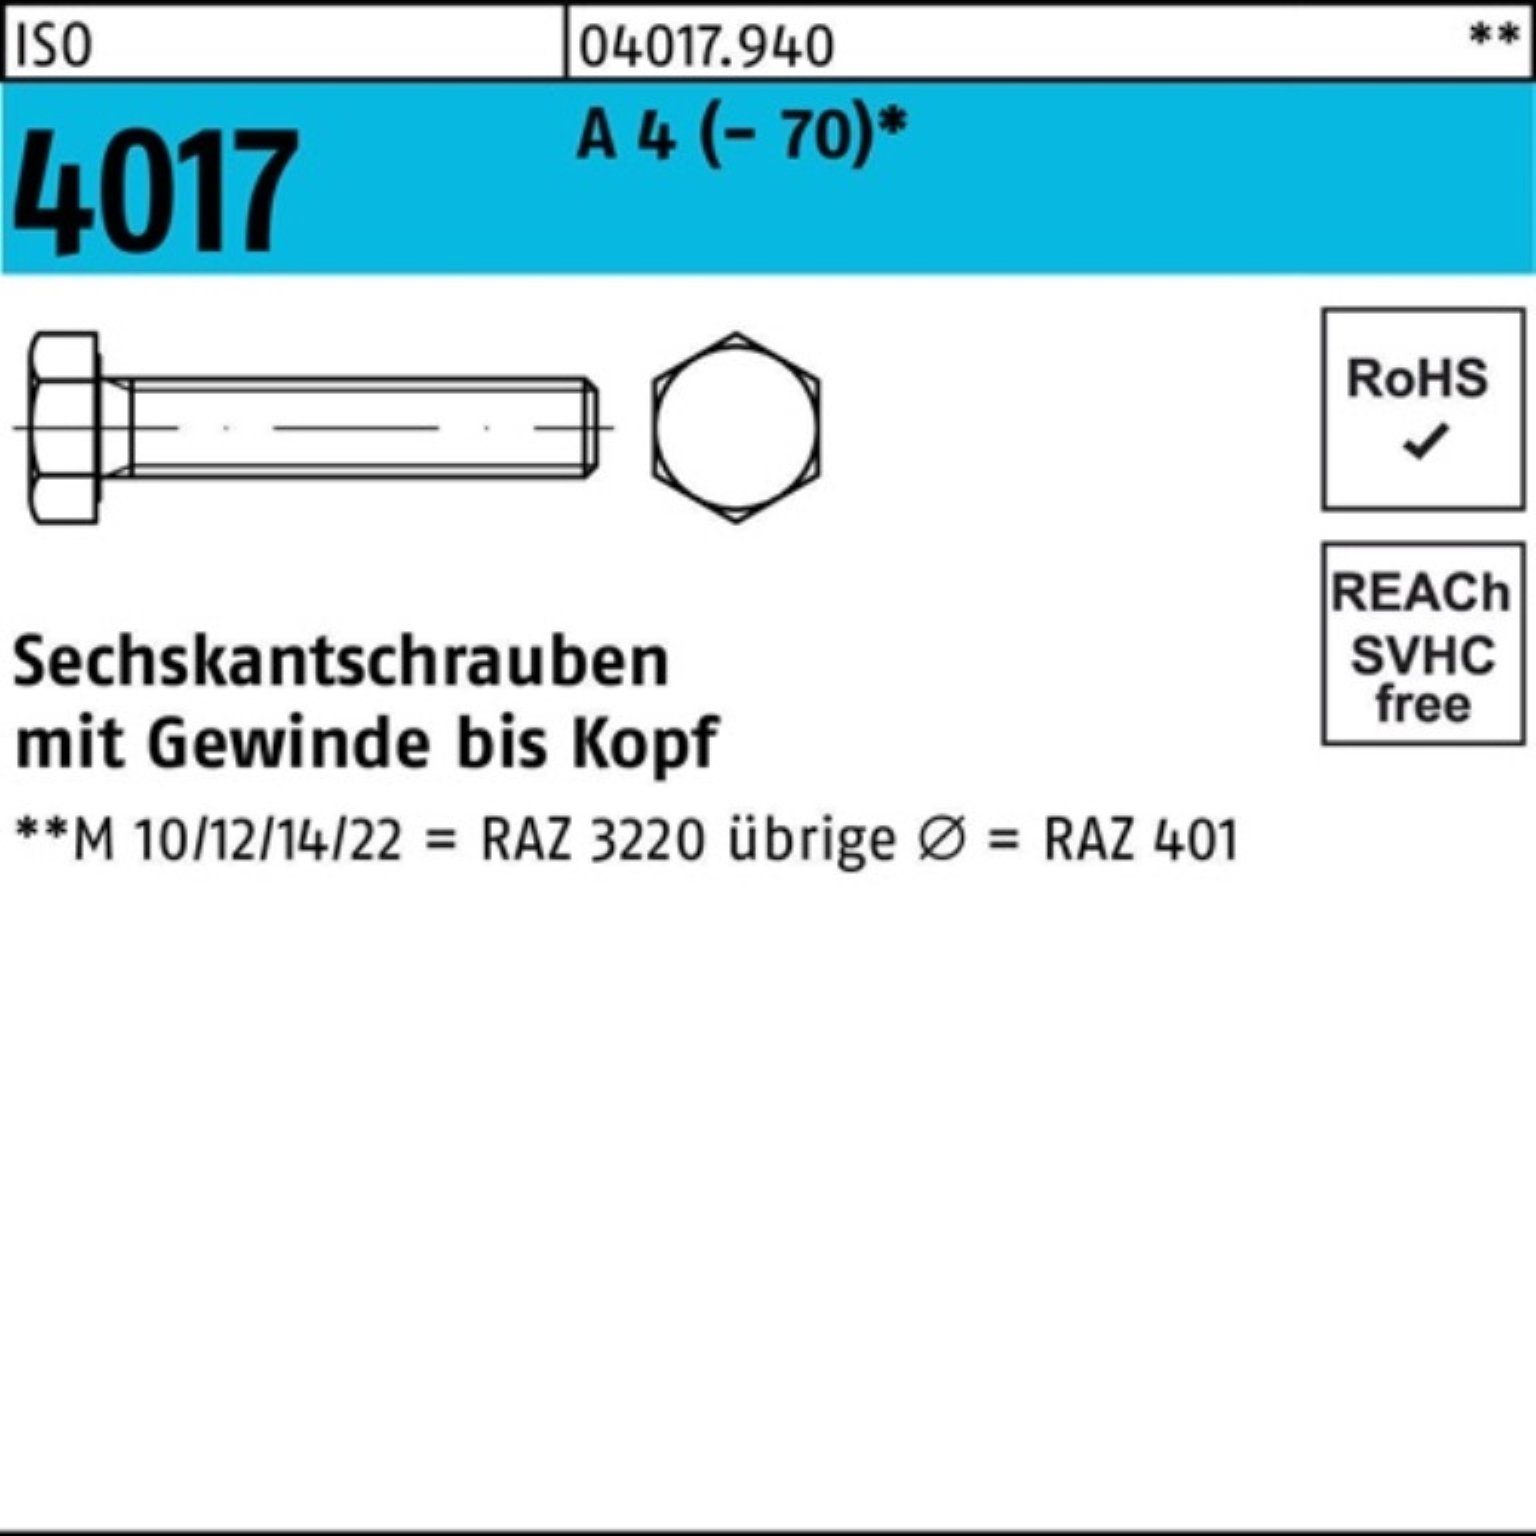 Pack Bufab 4 1 75 (70) 4017 ISO Sechskantschraube M22x Sechskantschraube VG I A Stück 100er